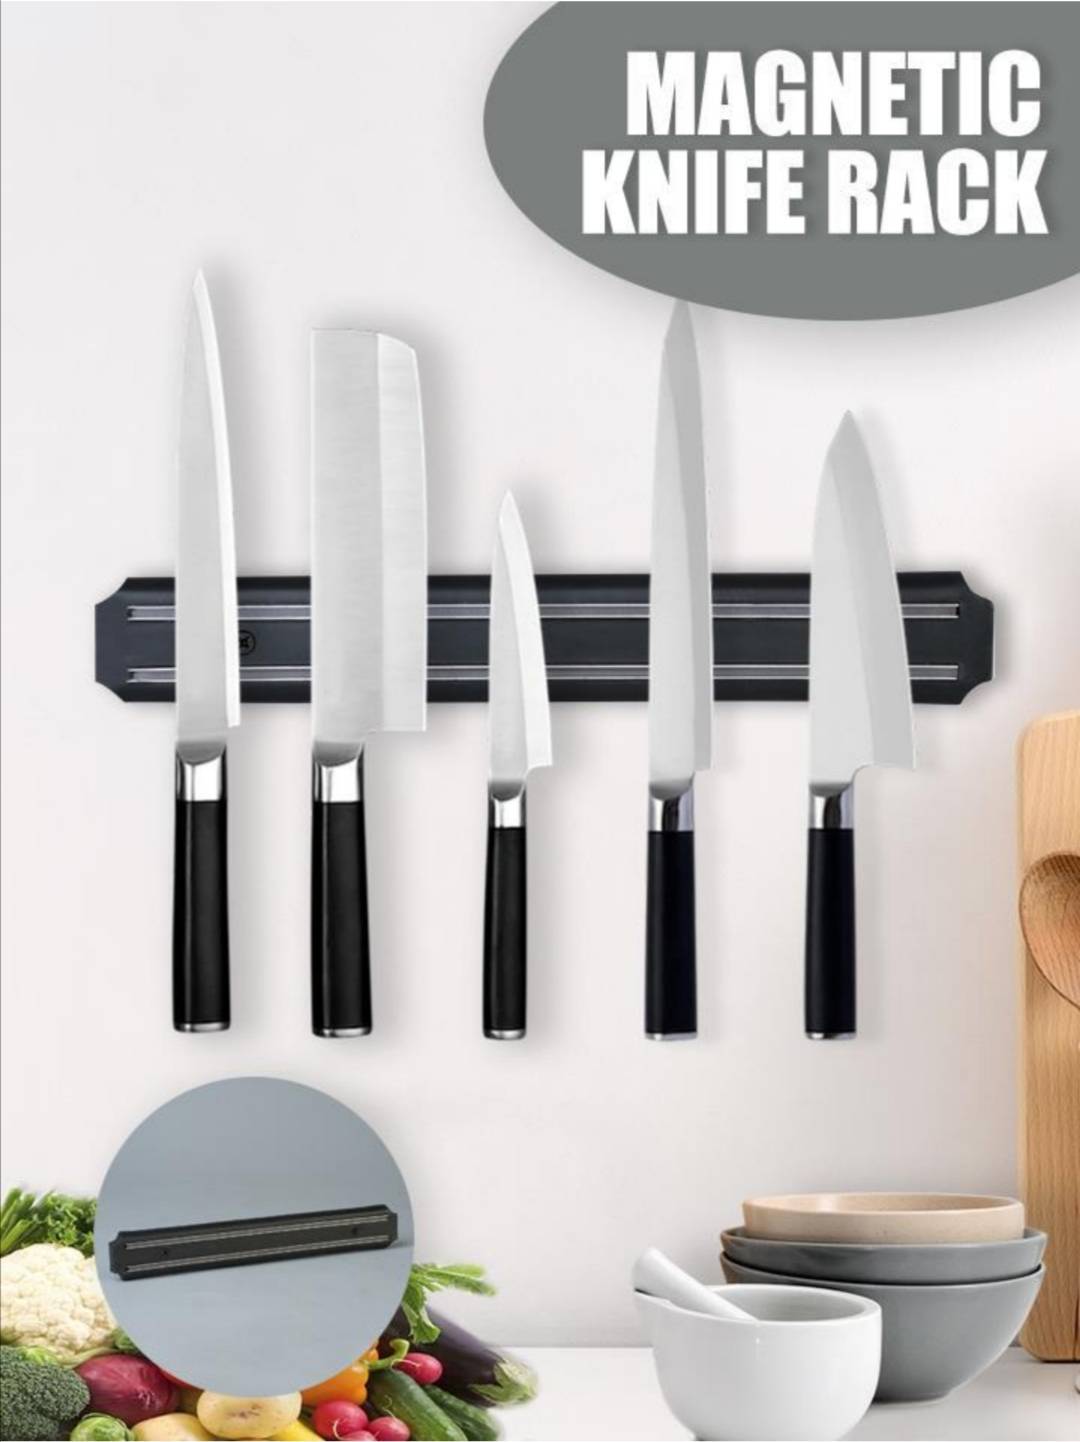 แถบแม่เหล็กเก็บมีดติดผนัง ที่เก็บมีดทำครัวติดผนัง Magnetic Knife Rack ที่เก็บมีดทำครัวติดผนัง ของแท้ แม่เหล็ก ติดดี